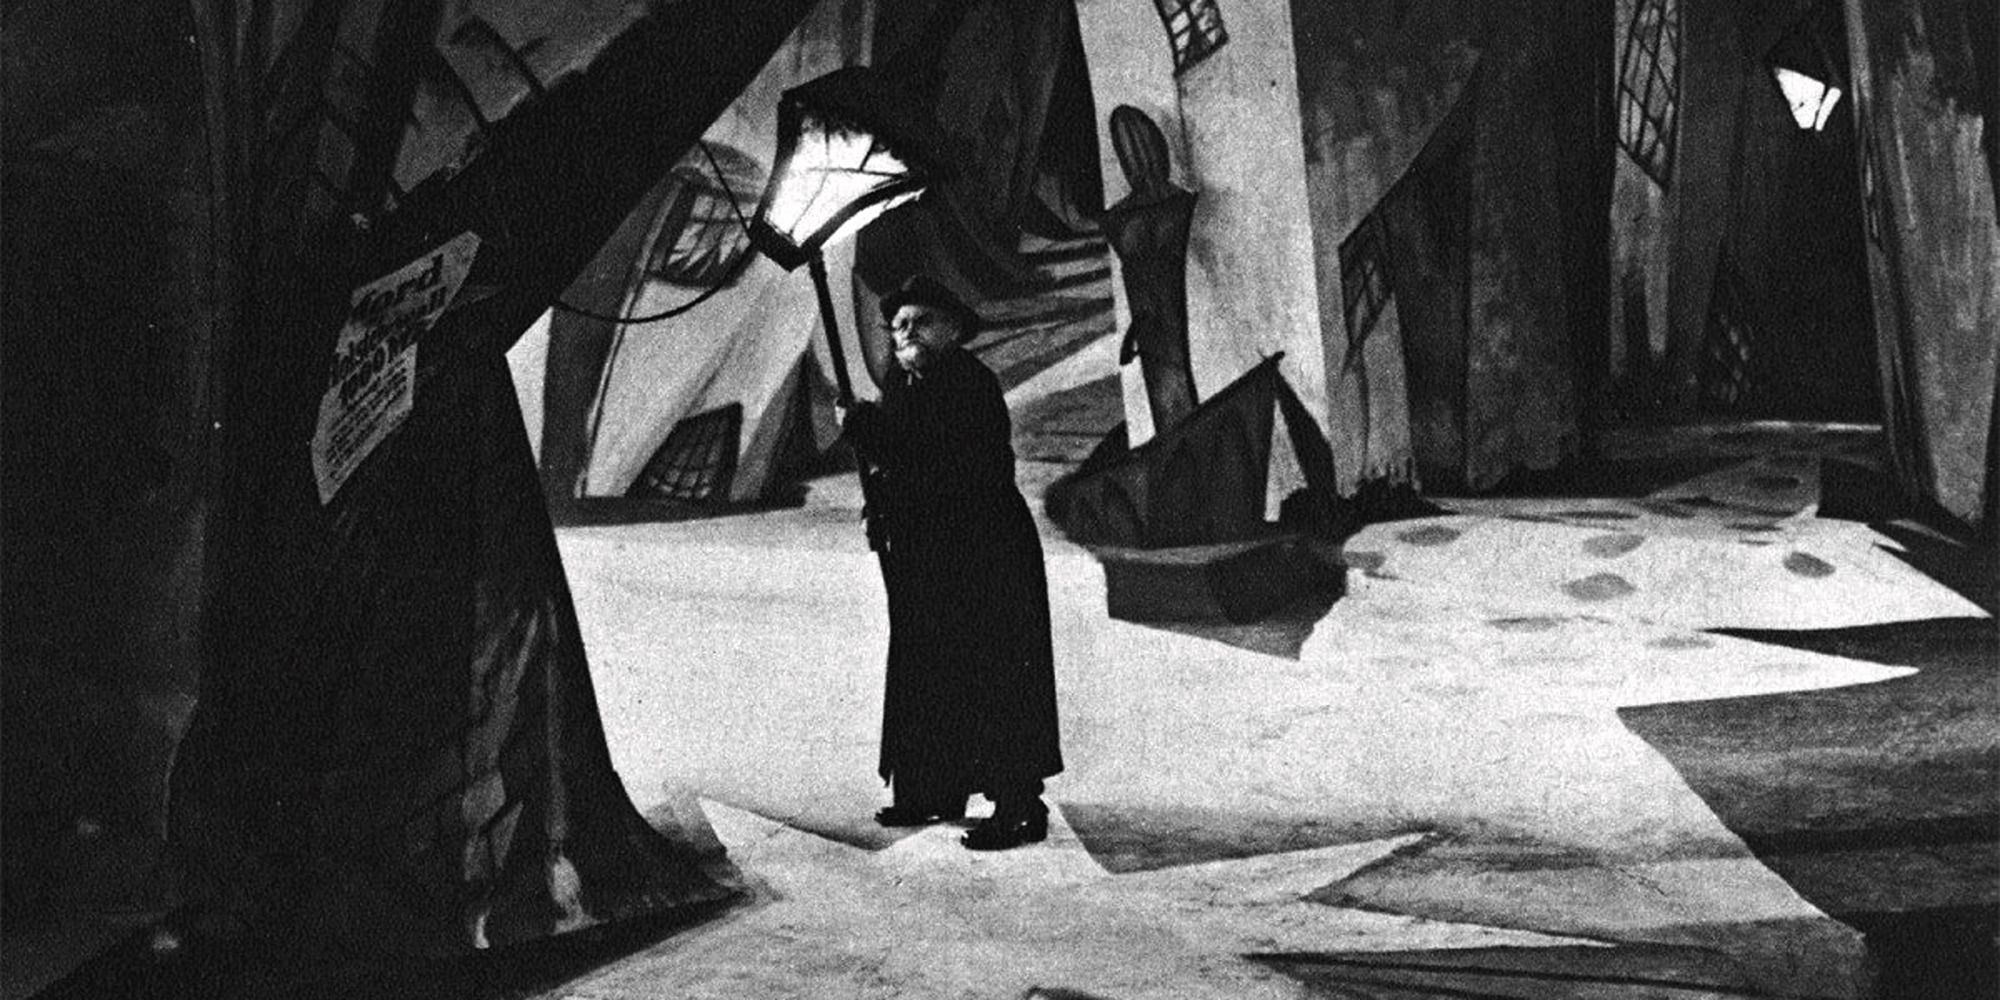 Le Dr Caligari masqué au milieu d'une ville étrange dans 